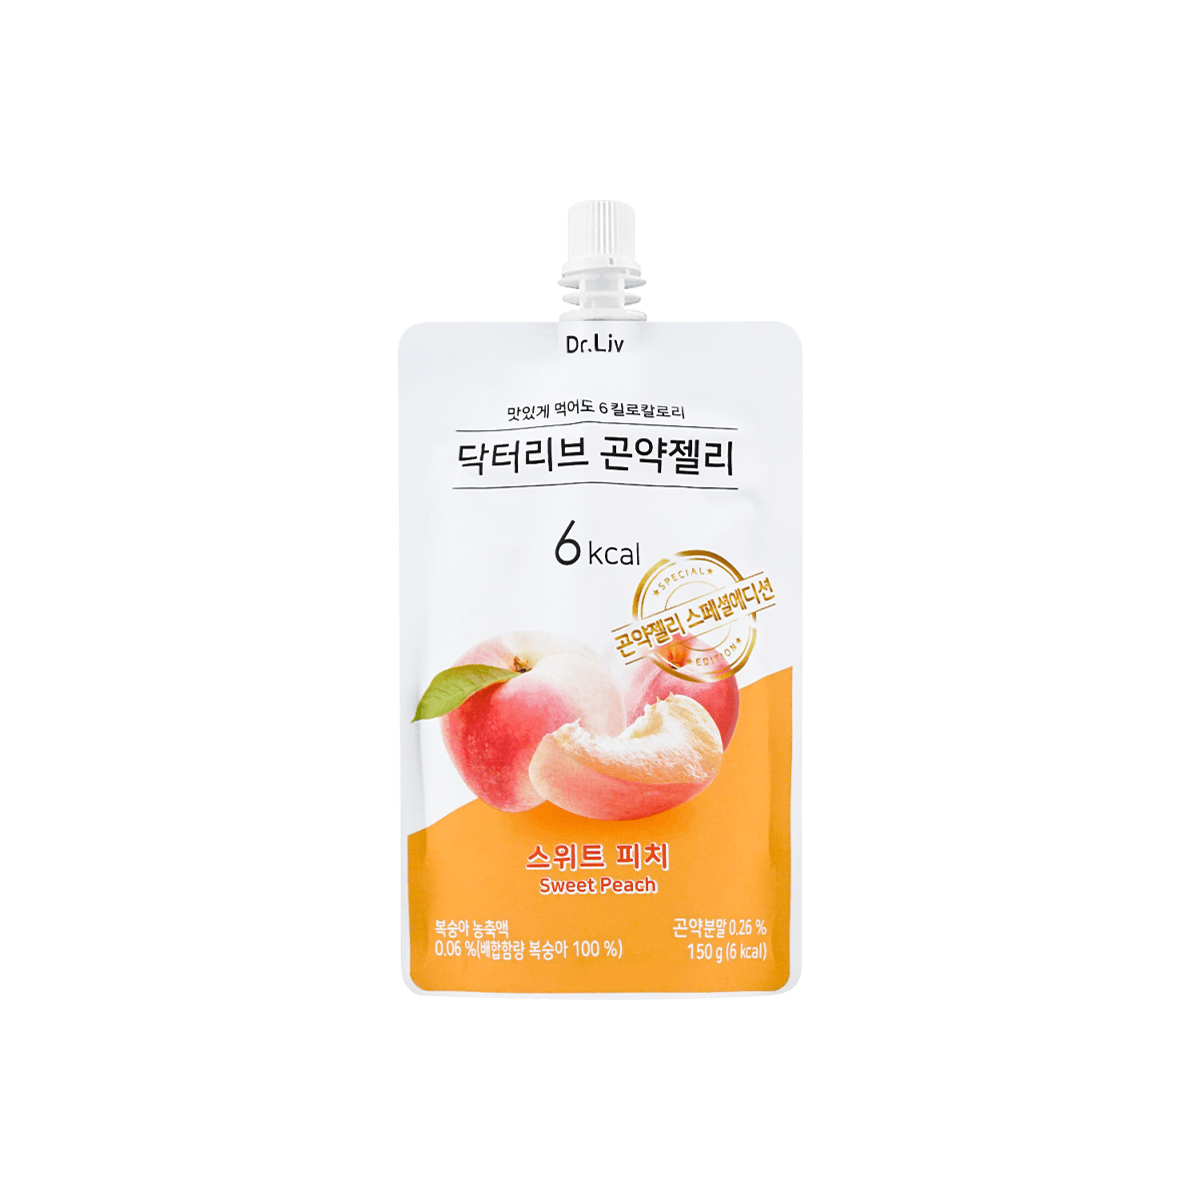 韩国DR.LIV 低糖低卡蒟蒻果冻 水蜜桃味 150g 怎么样 - 亚米网